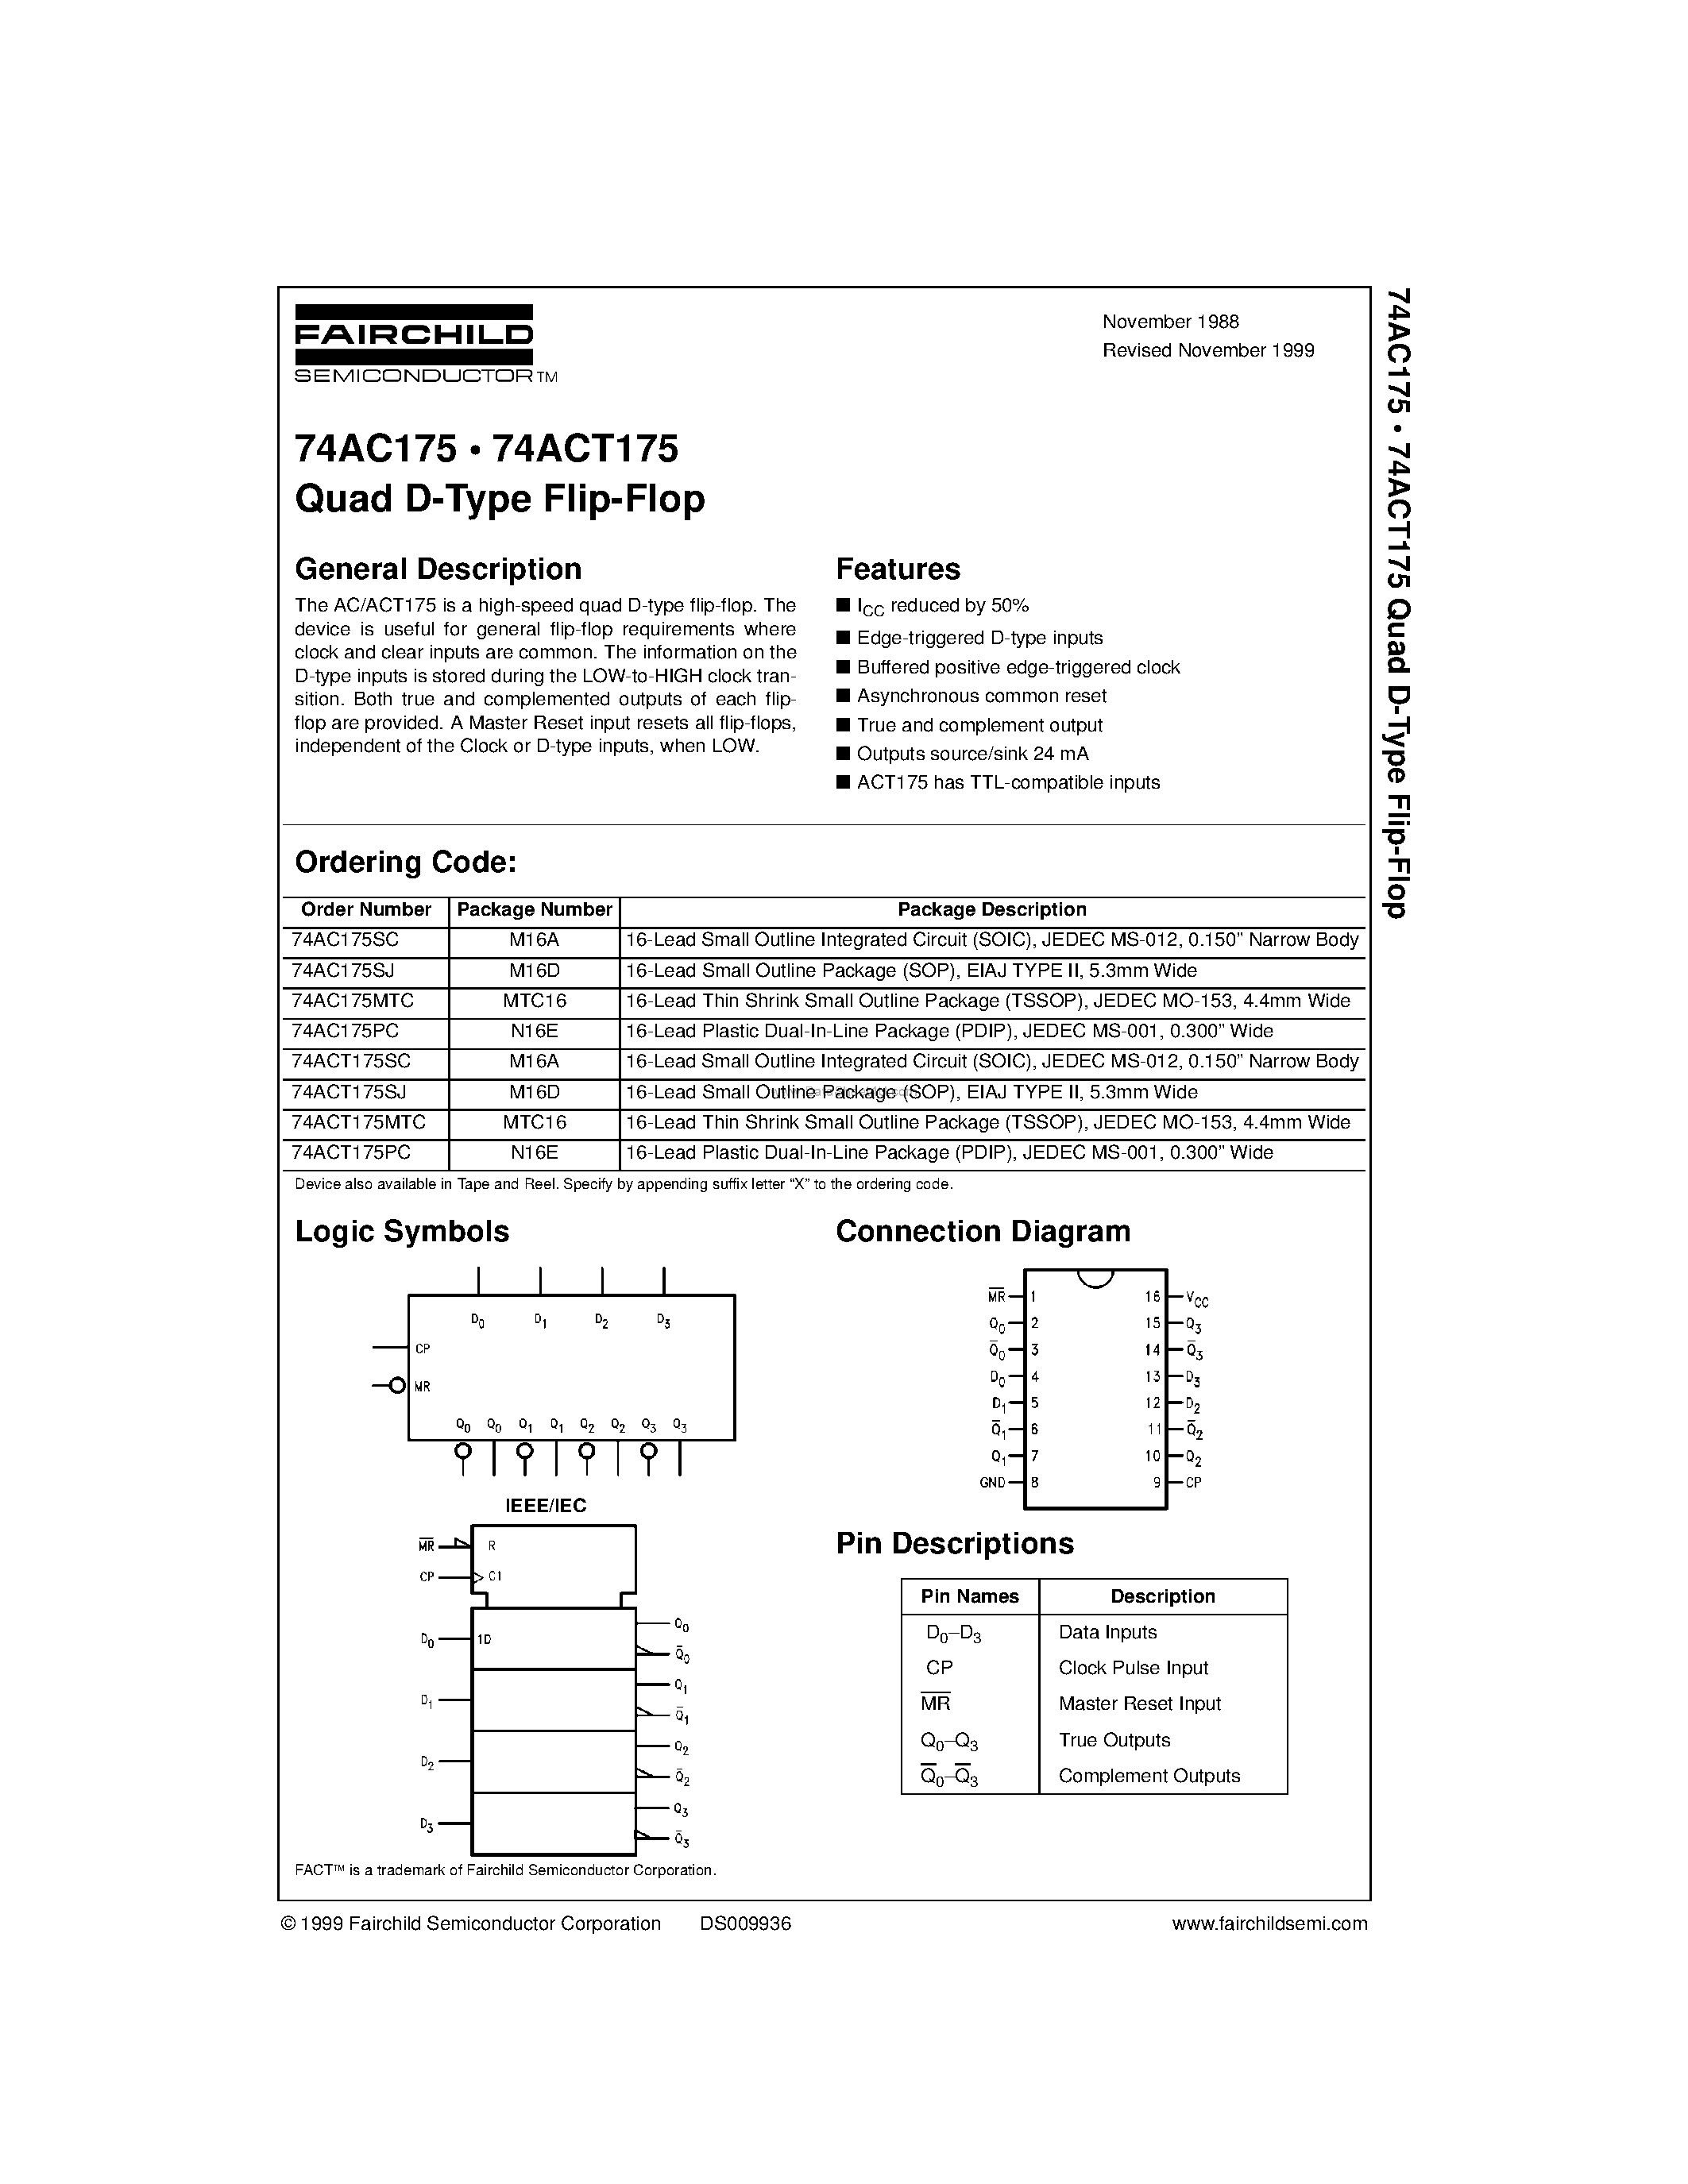 Datasheet 74AC175MTC - Quad D-Type Flip-Flop page 1